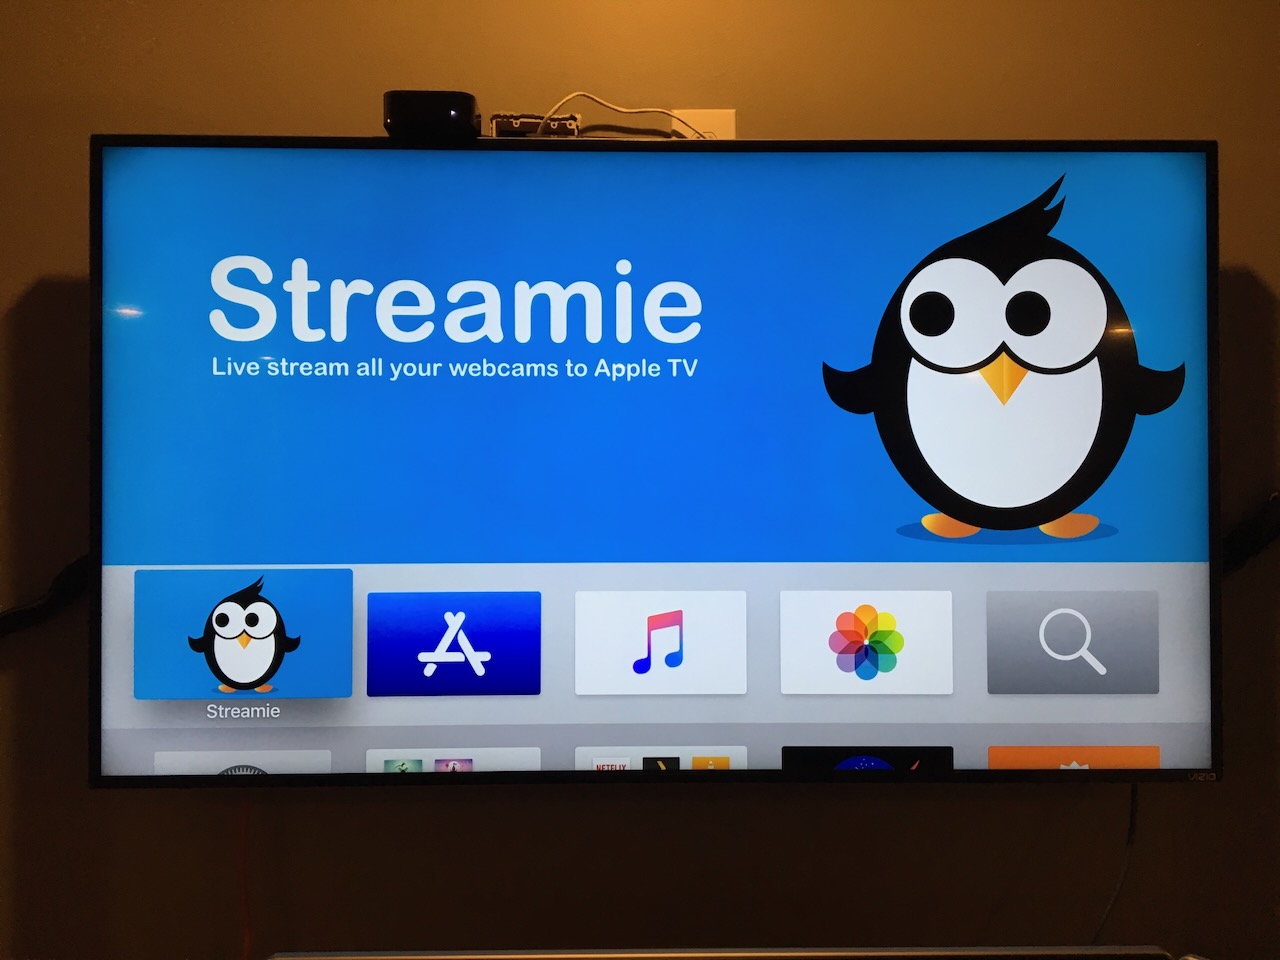 Streamie on Apple TV